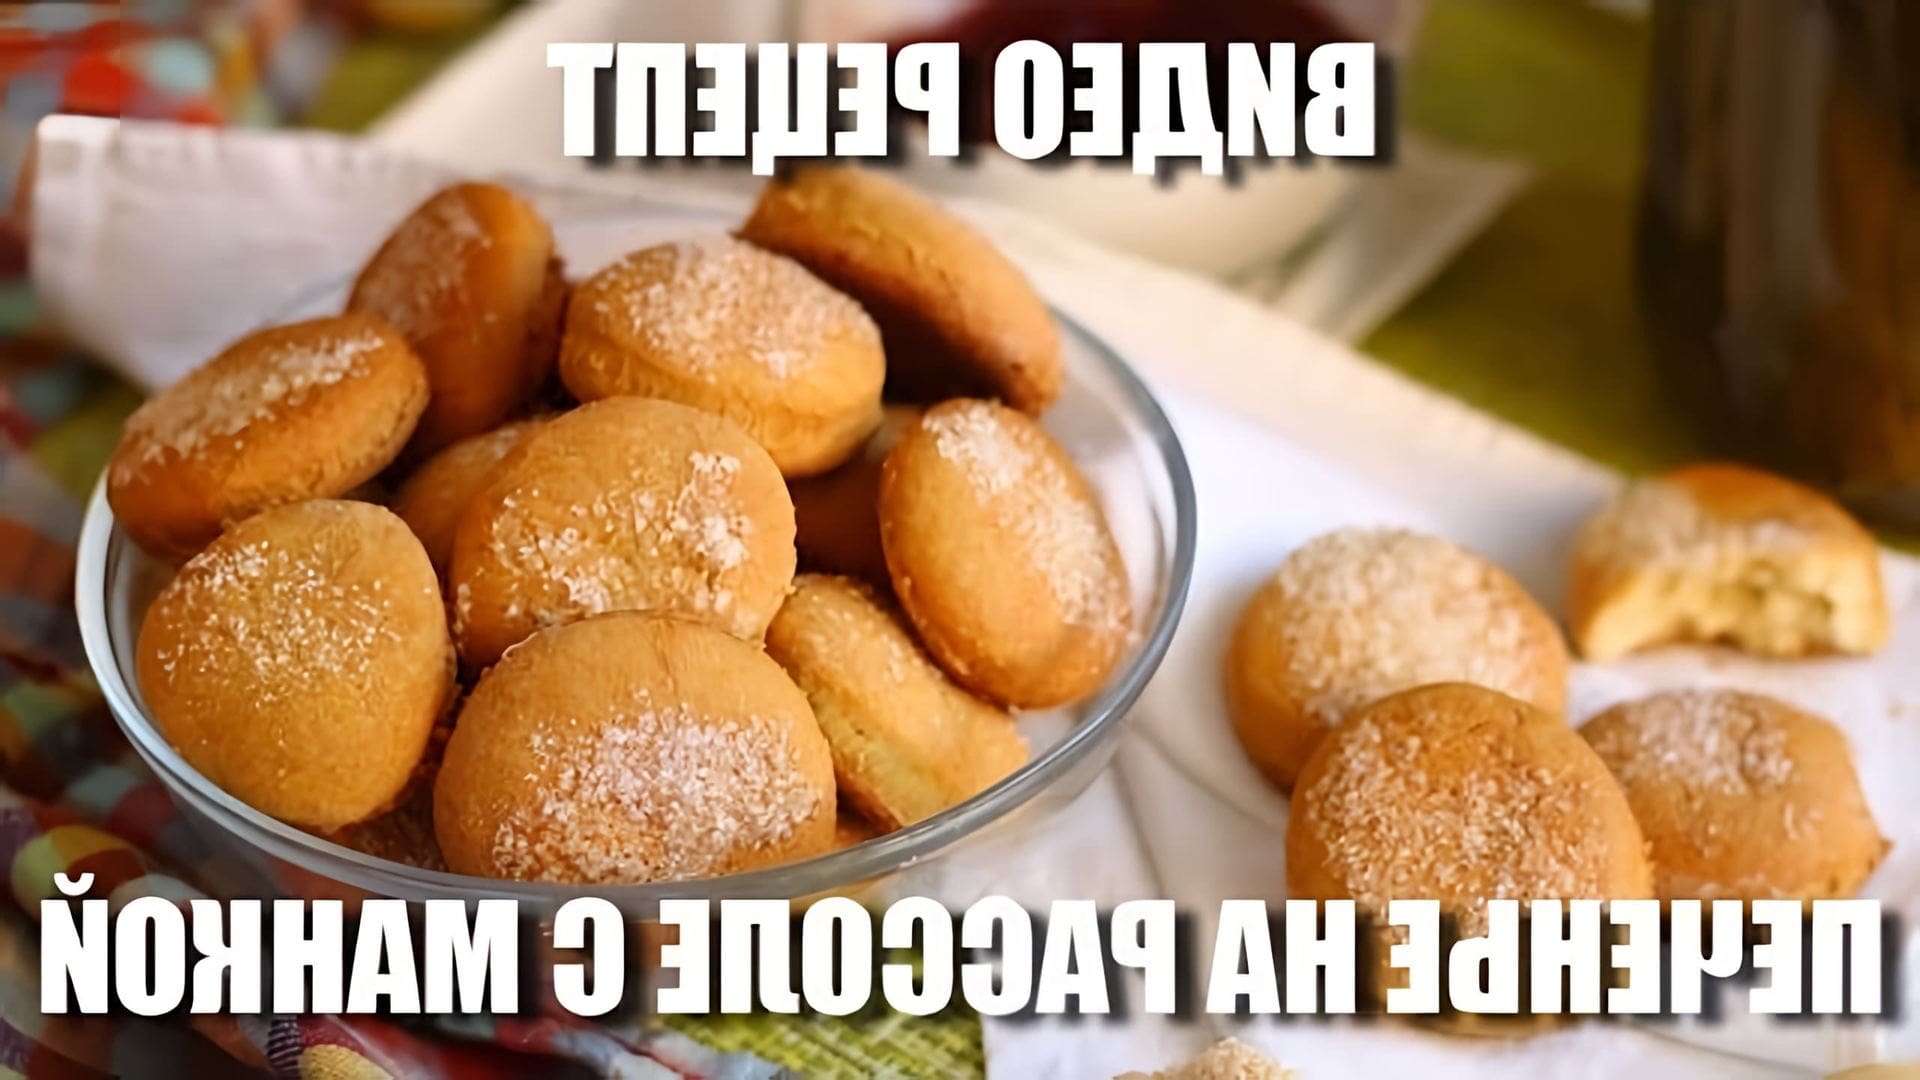 В этом видео демонстрируется рецепт приготовления печенья на рассоле с манкой